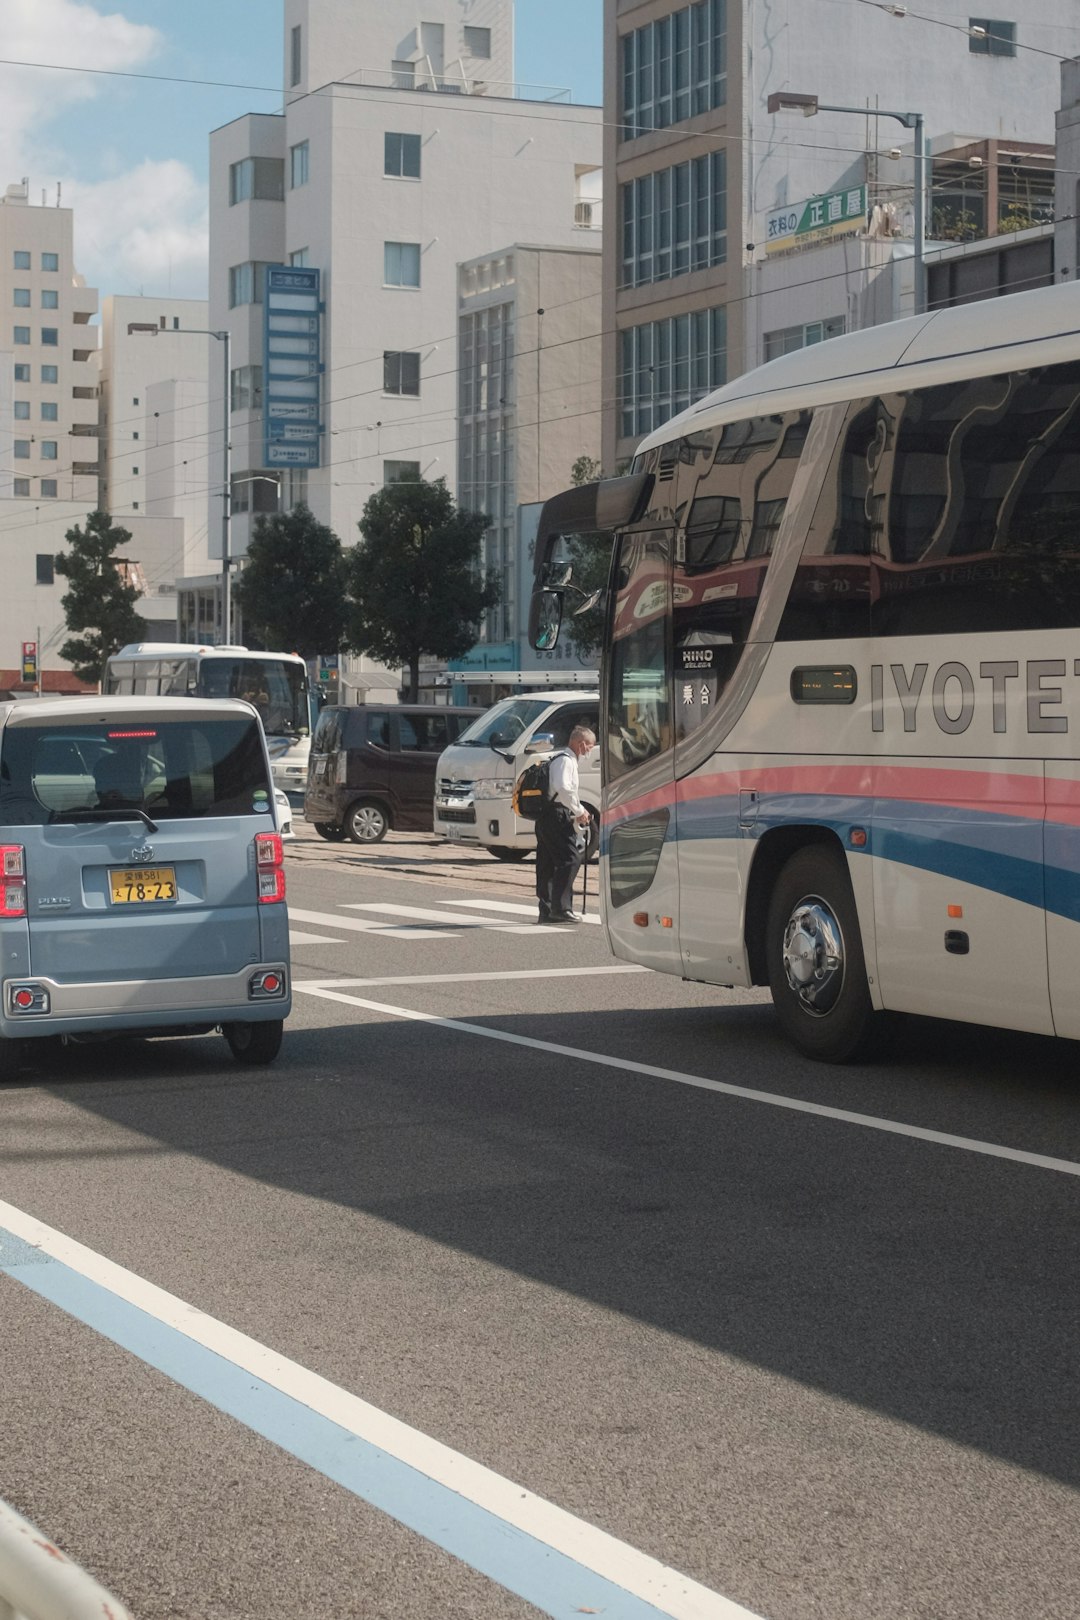 people walking on pedestrian lane near white and blue bus during daytime